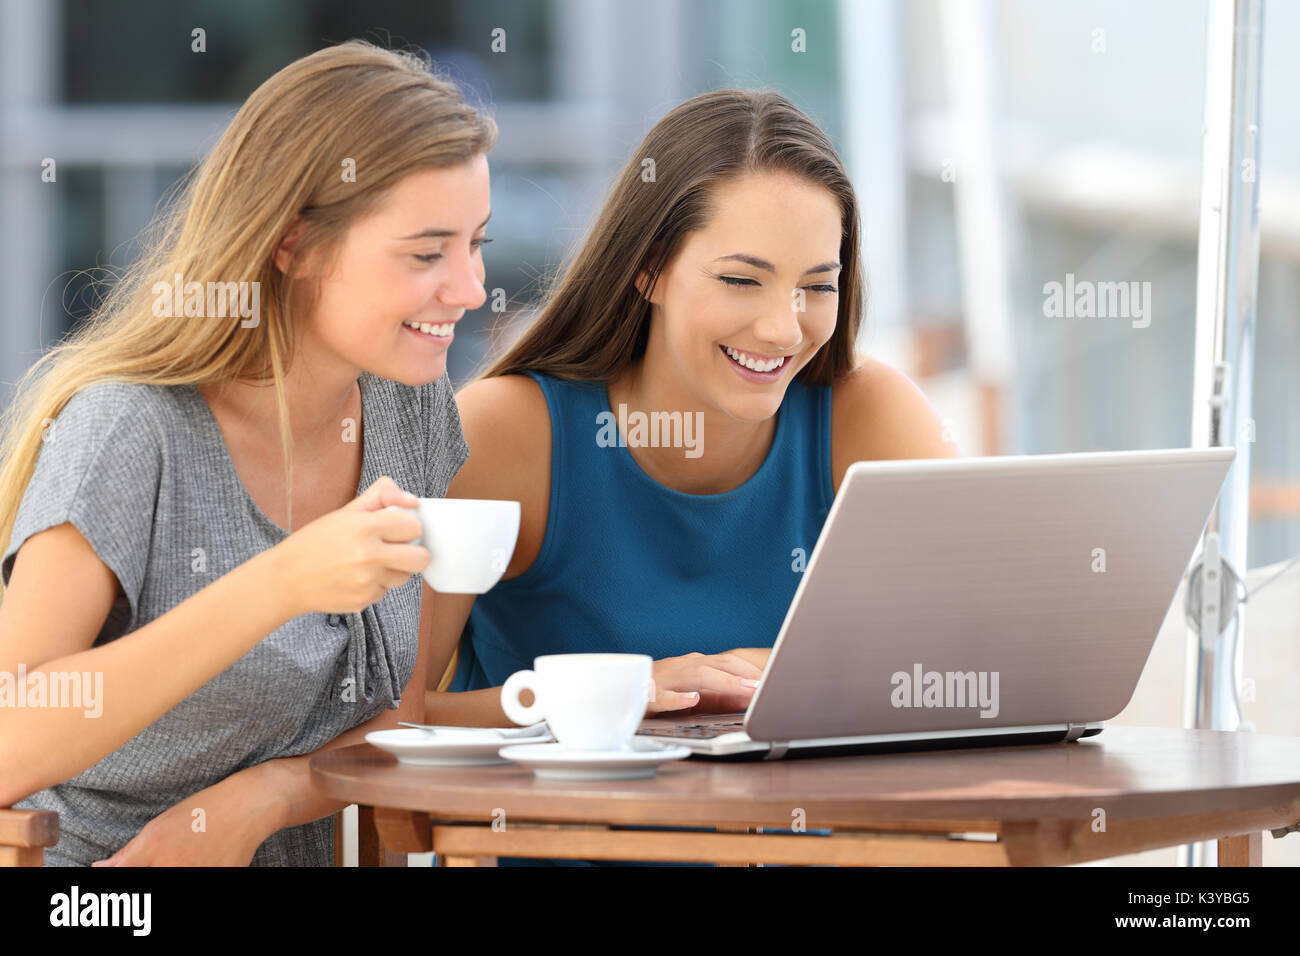 Deux amis drôle de regarder du contenu multimédia dans un ordinateur portable assis dans un bar Banque D'Images